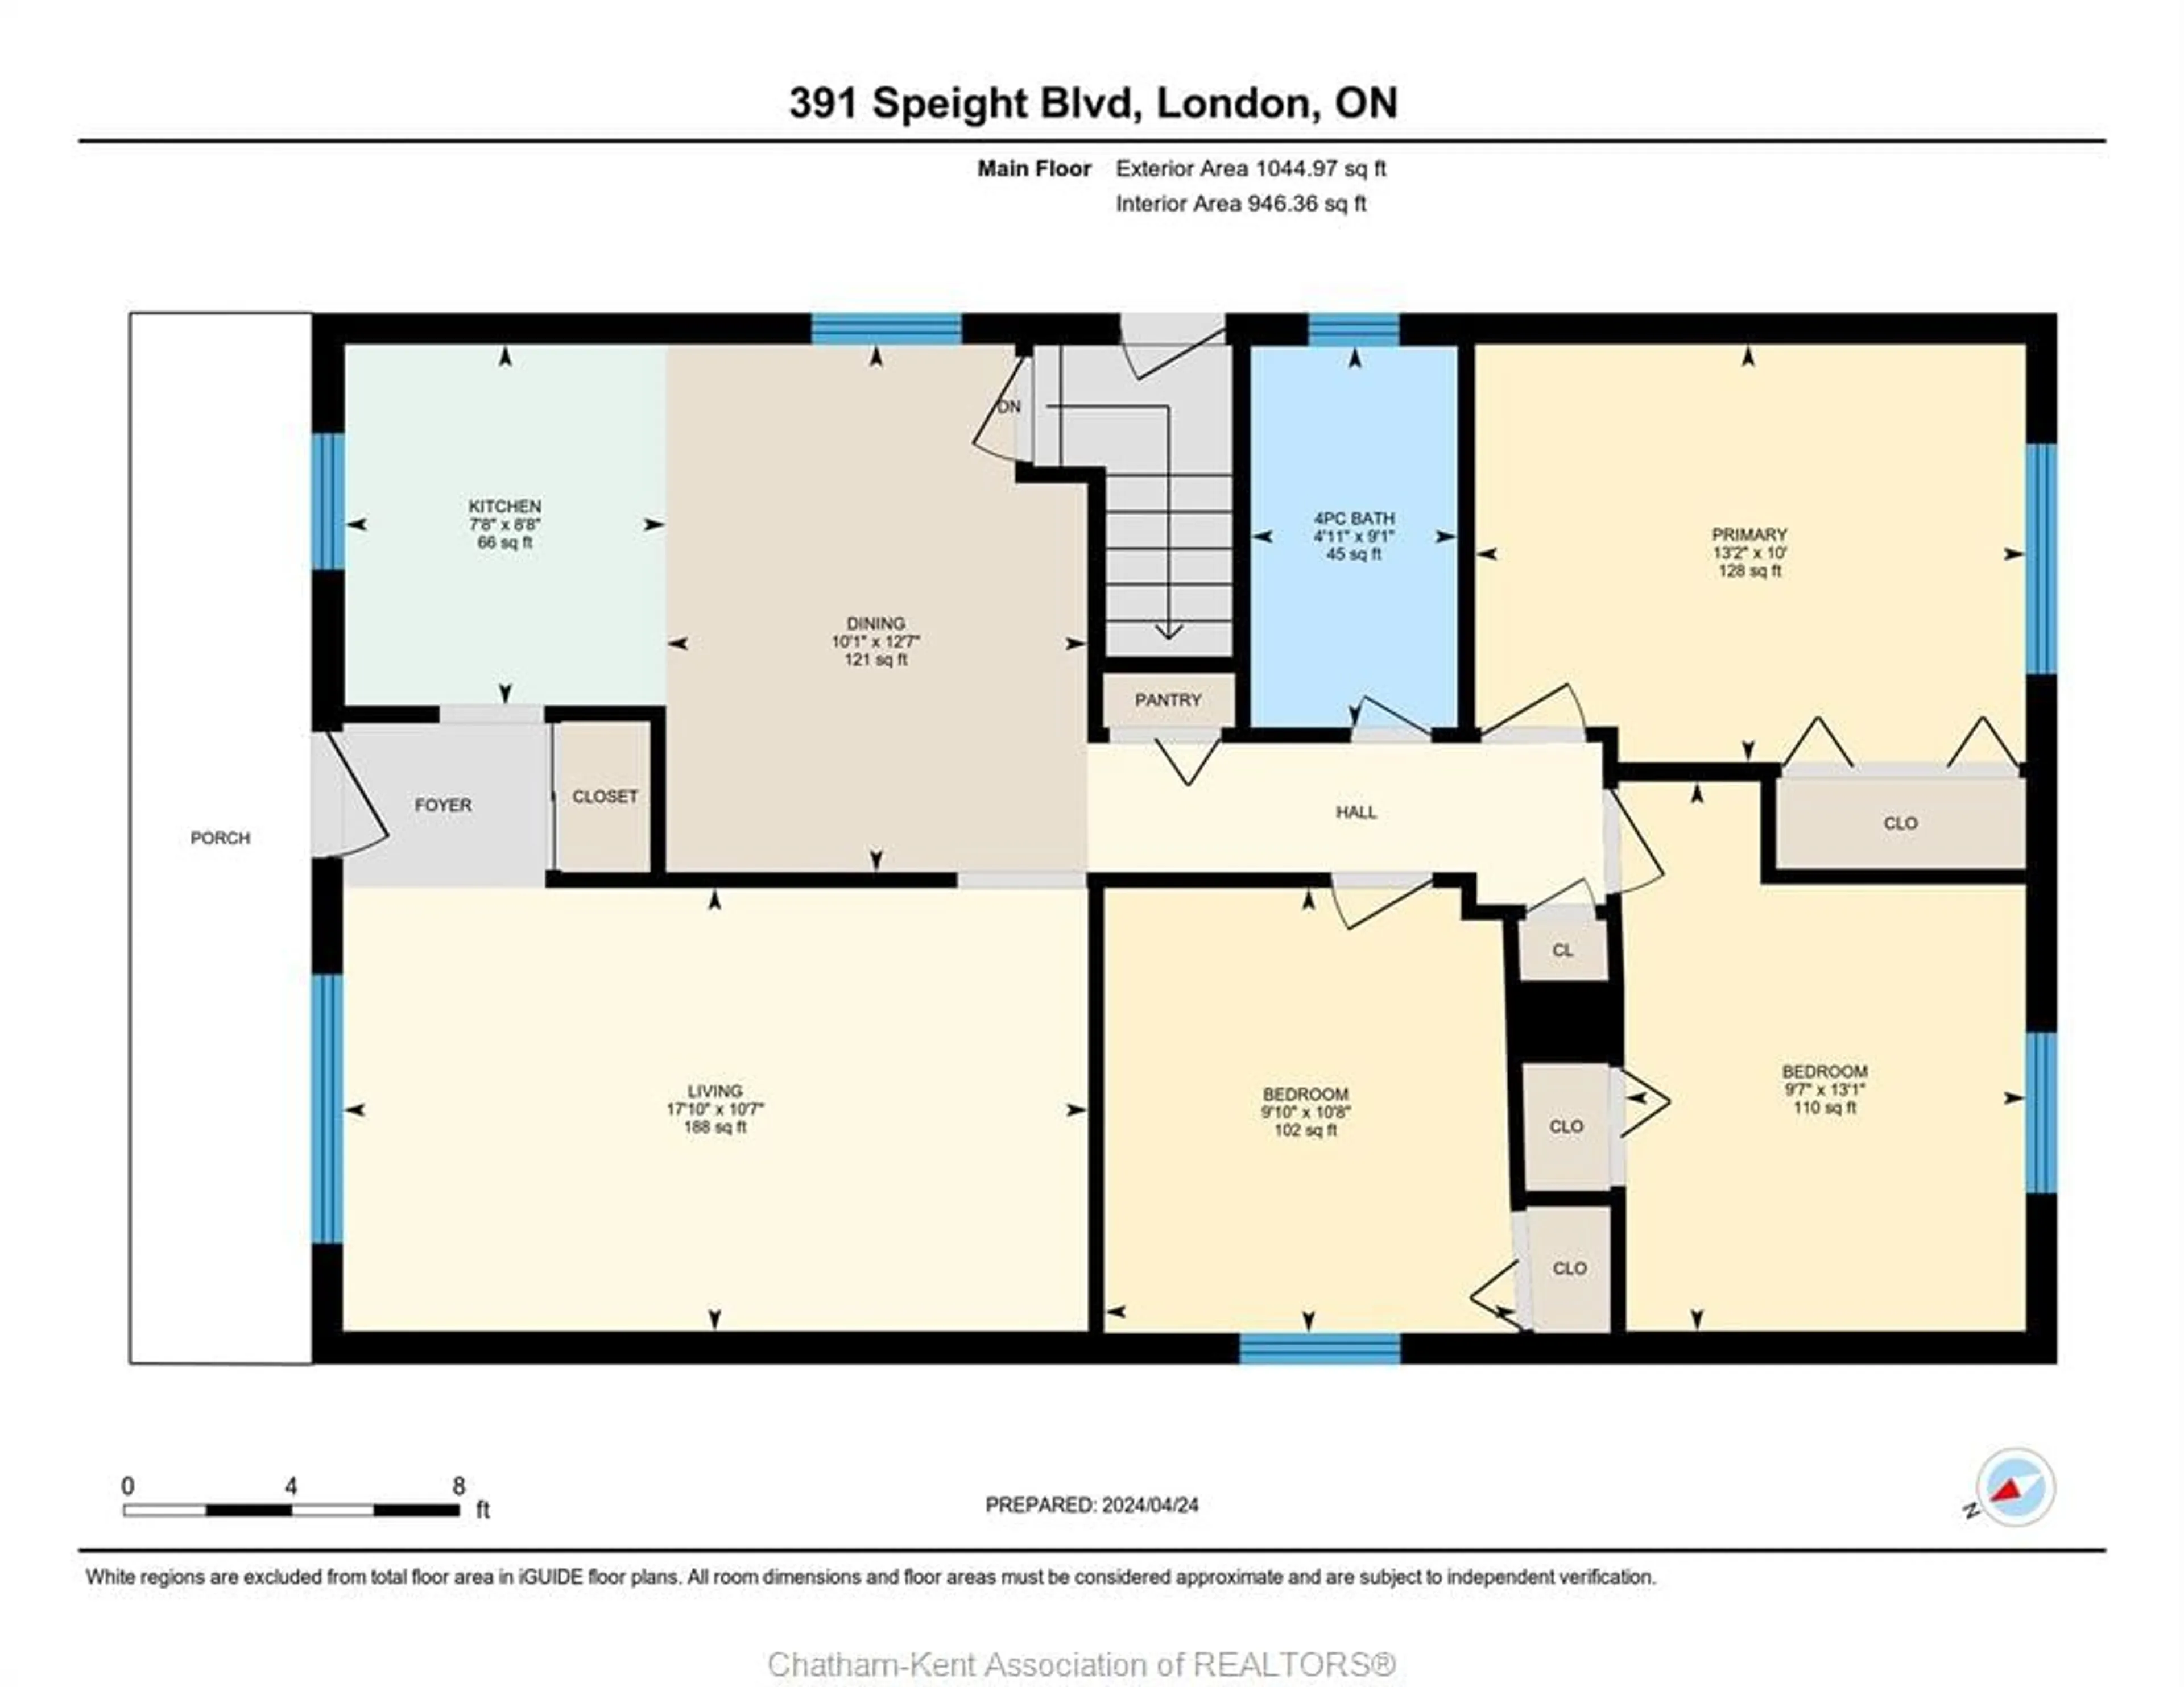 Floor plan for 391 Speight Blvd, London Ontario N5V 3J8